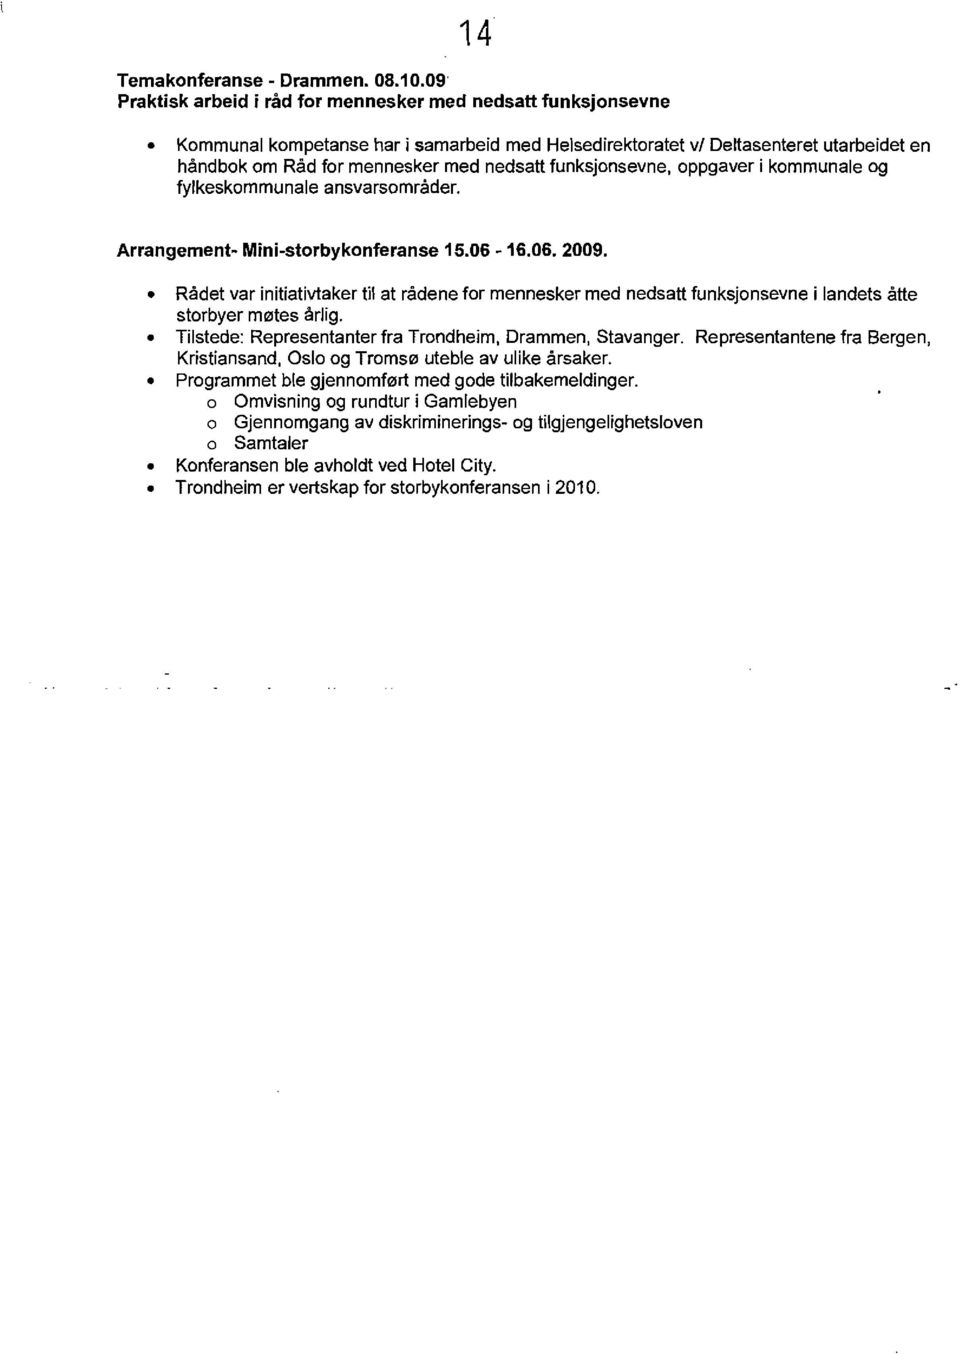 funksjonsevne, oppgaver i kommunale og fylkeskommunale ansvarsomrader. Arrangement- Mini-storbykonferanse 15.06-16.06. 2009.